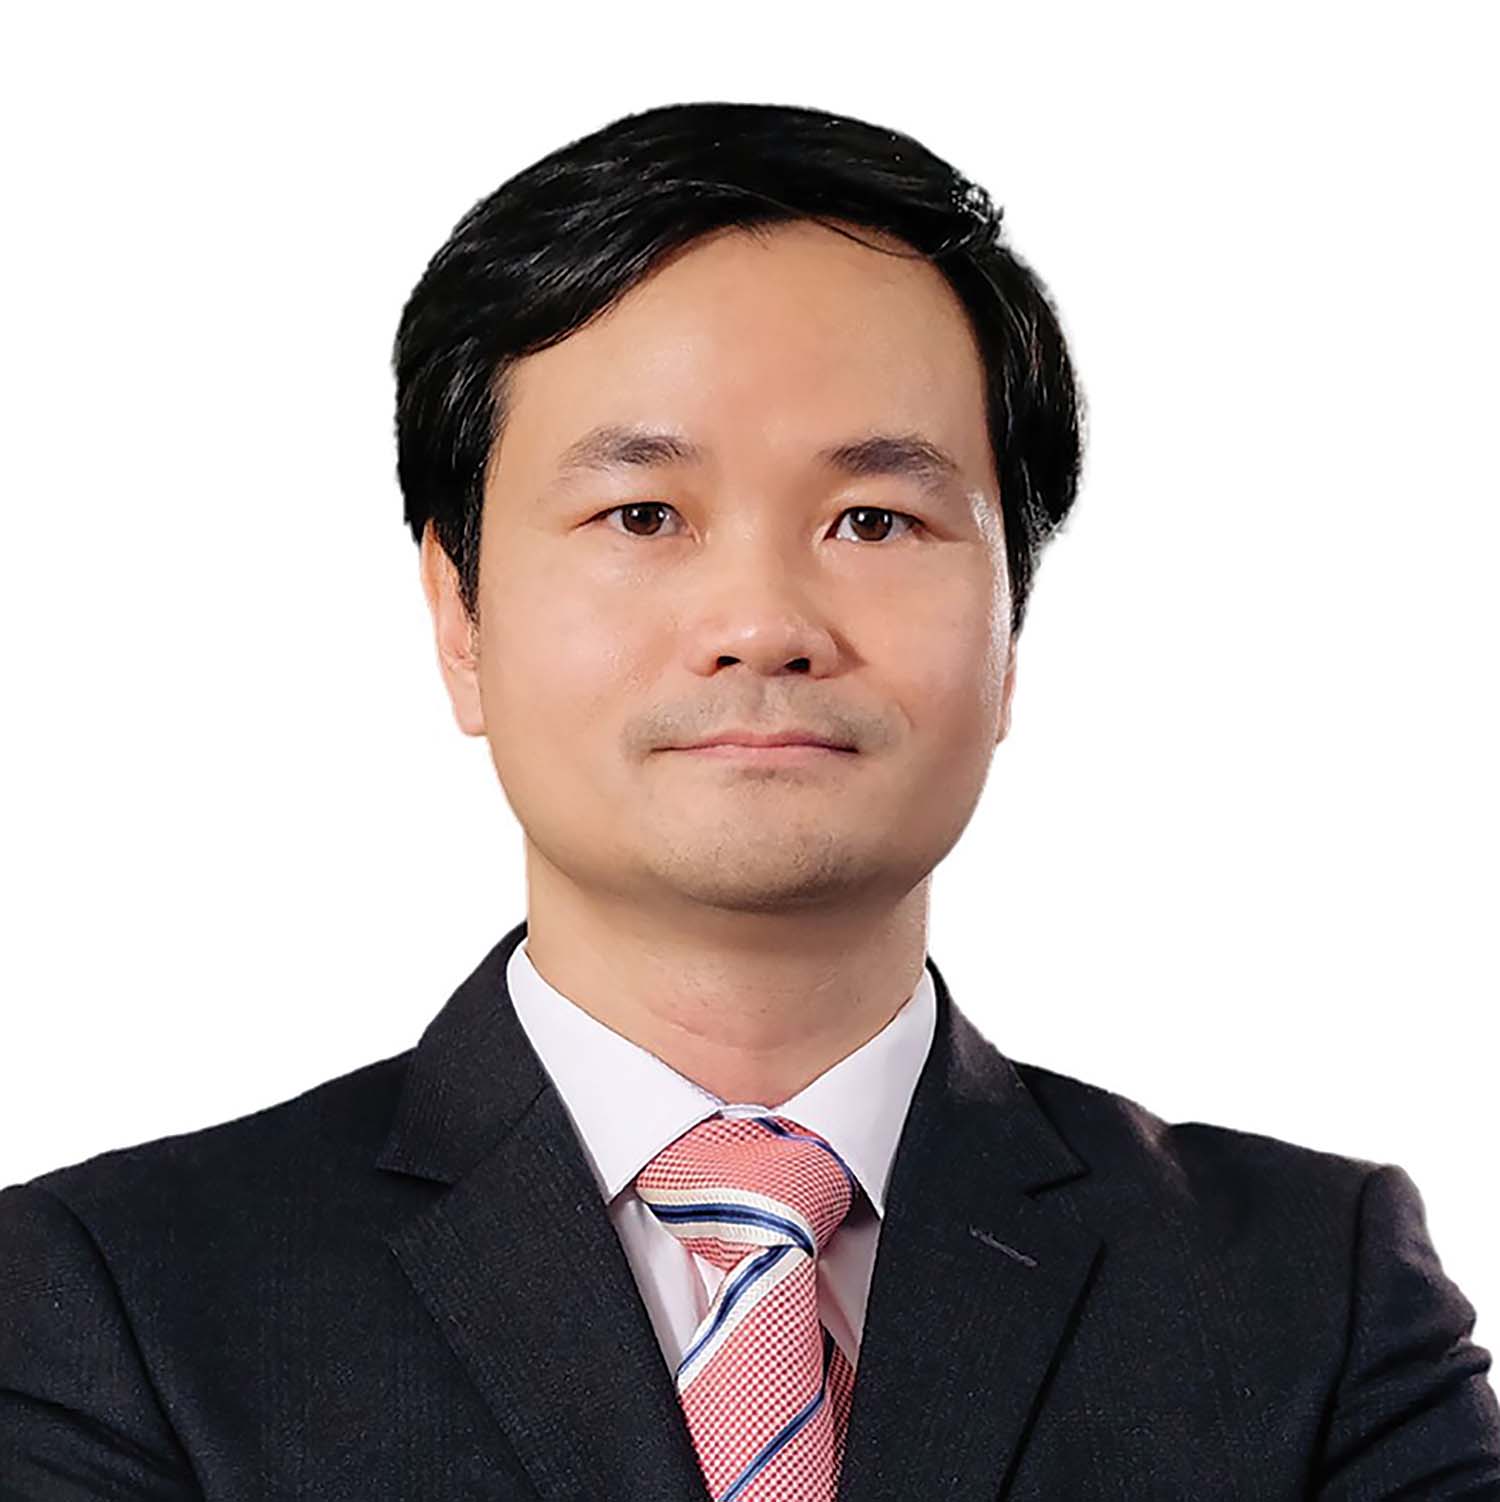 Cơ hội cho các công ty cung cấp giải pháp công nghệ - Ông Nguyễn Hùng Cường, Giám đốc điều hành NashTech Việt Nam